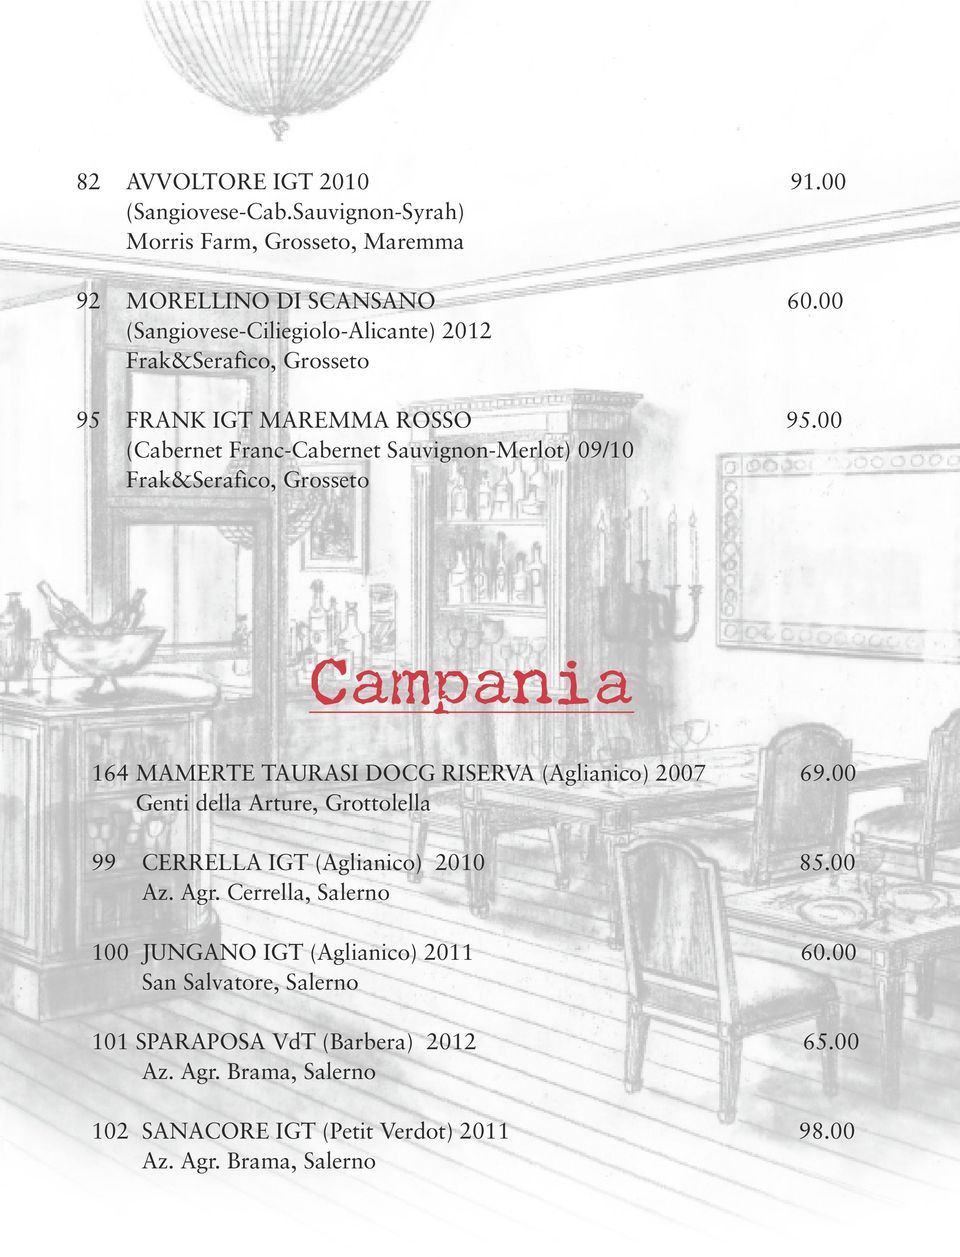 00 (Cabernet Franc-Cabernet Sauvignon-Merlot) 09/10 Frak&Serafìco, Grosseto Campania 164 MAMERTE TAURASI DOCG RISERVA (Aglianico) 2007 69.